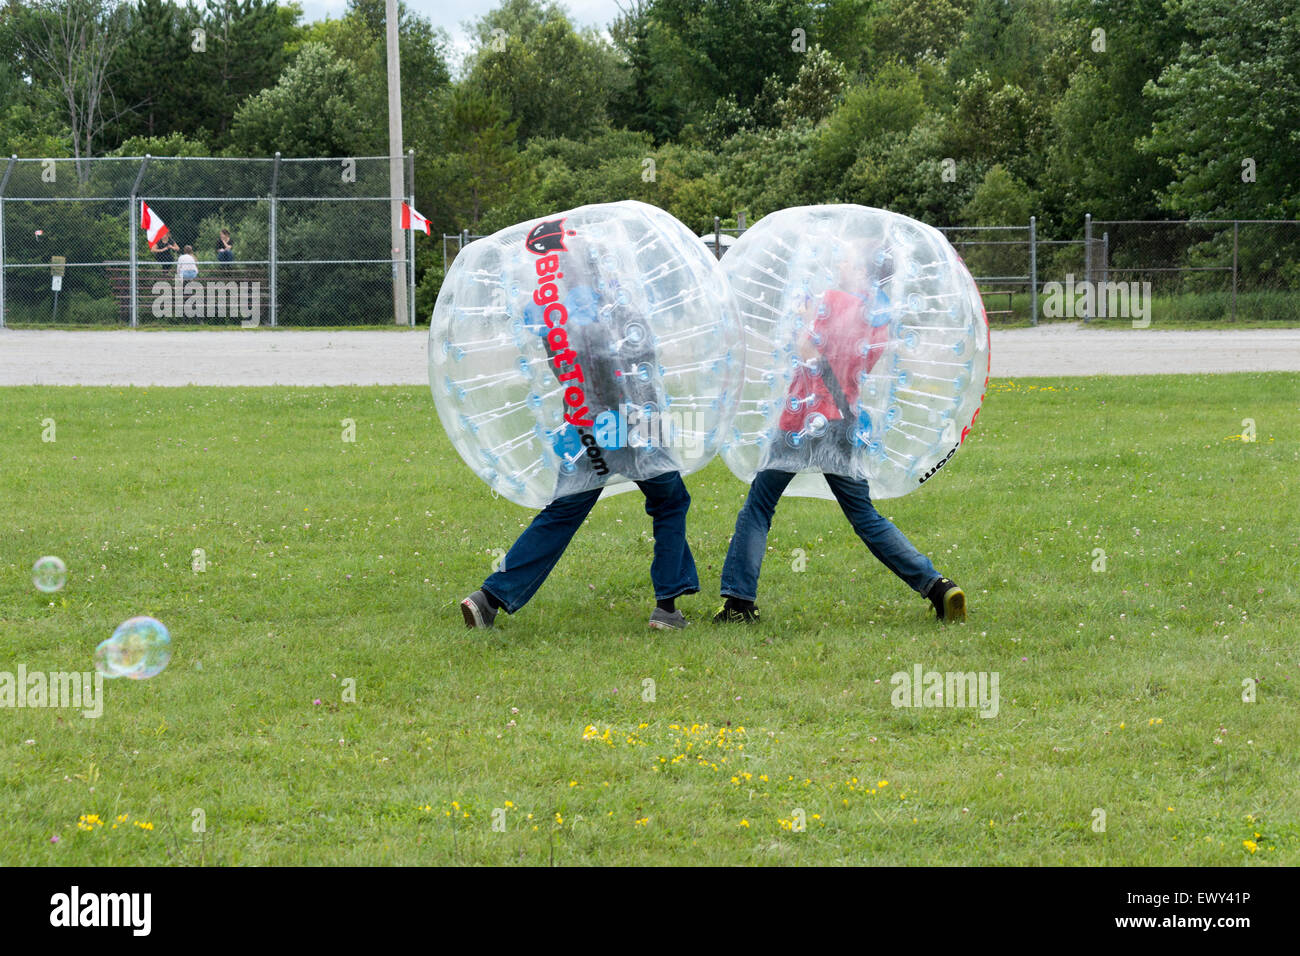 Zwei Jungs im Teenageralter stoßen einander mit ihren Stoßkugeln an der Cannington Canada Day Feierlichkeiten in Ontario Kanada Stockfoto